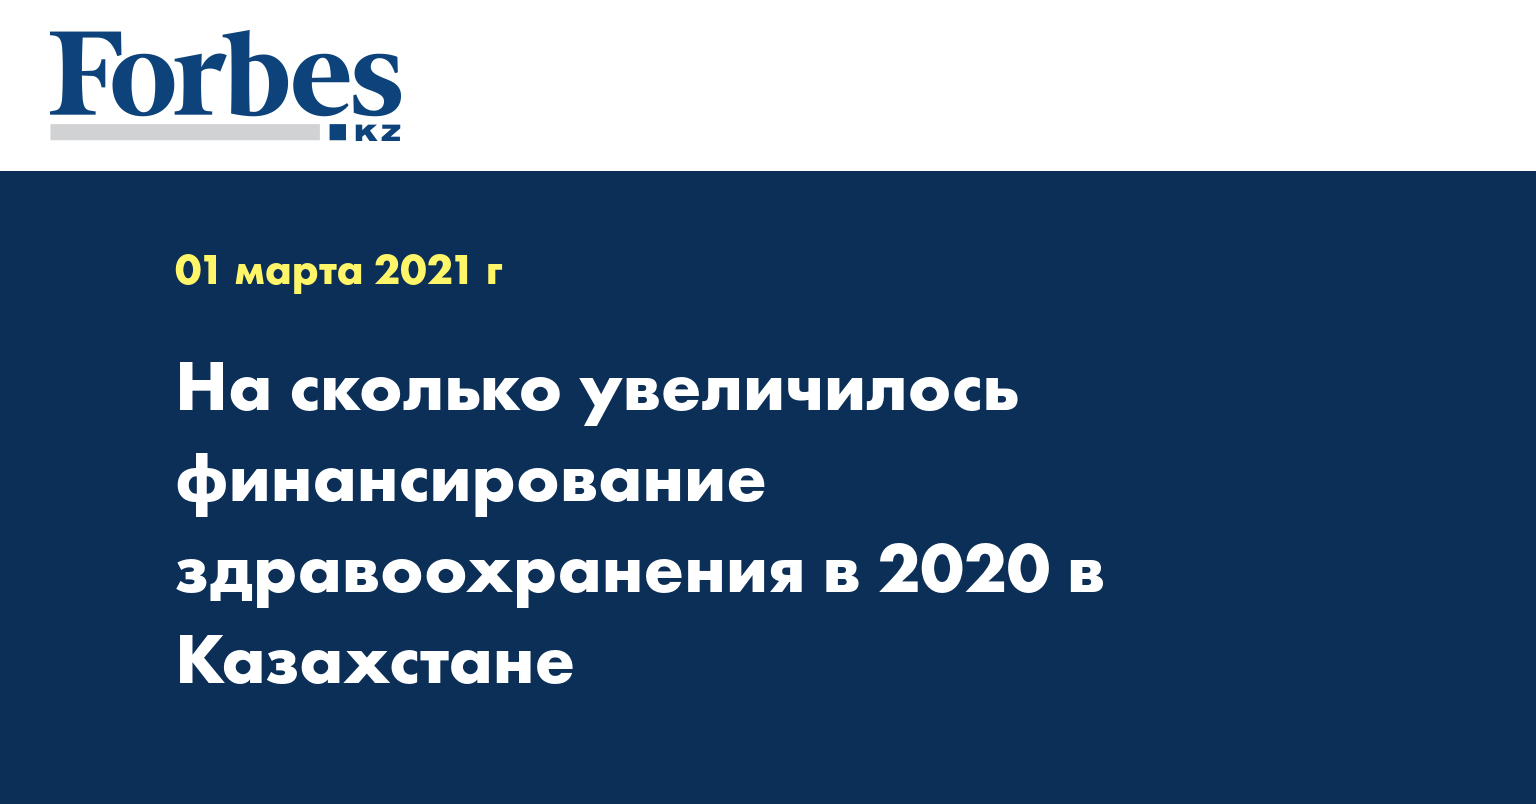 На сколько увеличилось финансирование здравоохранения в 2020 в Казахстане